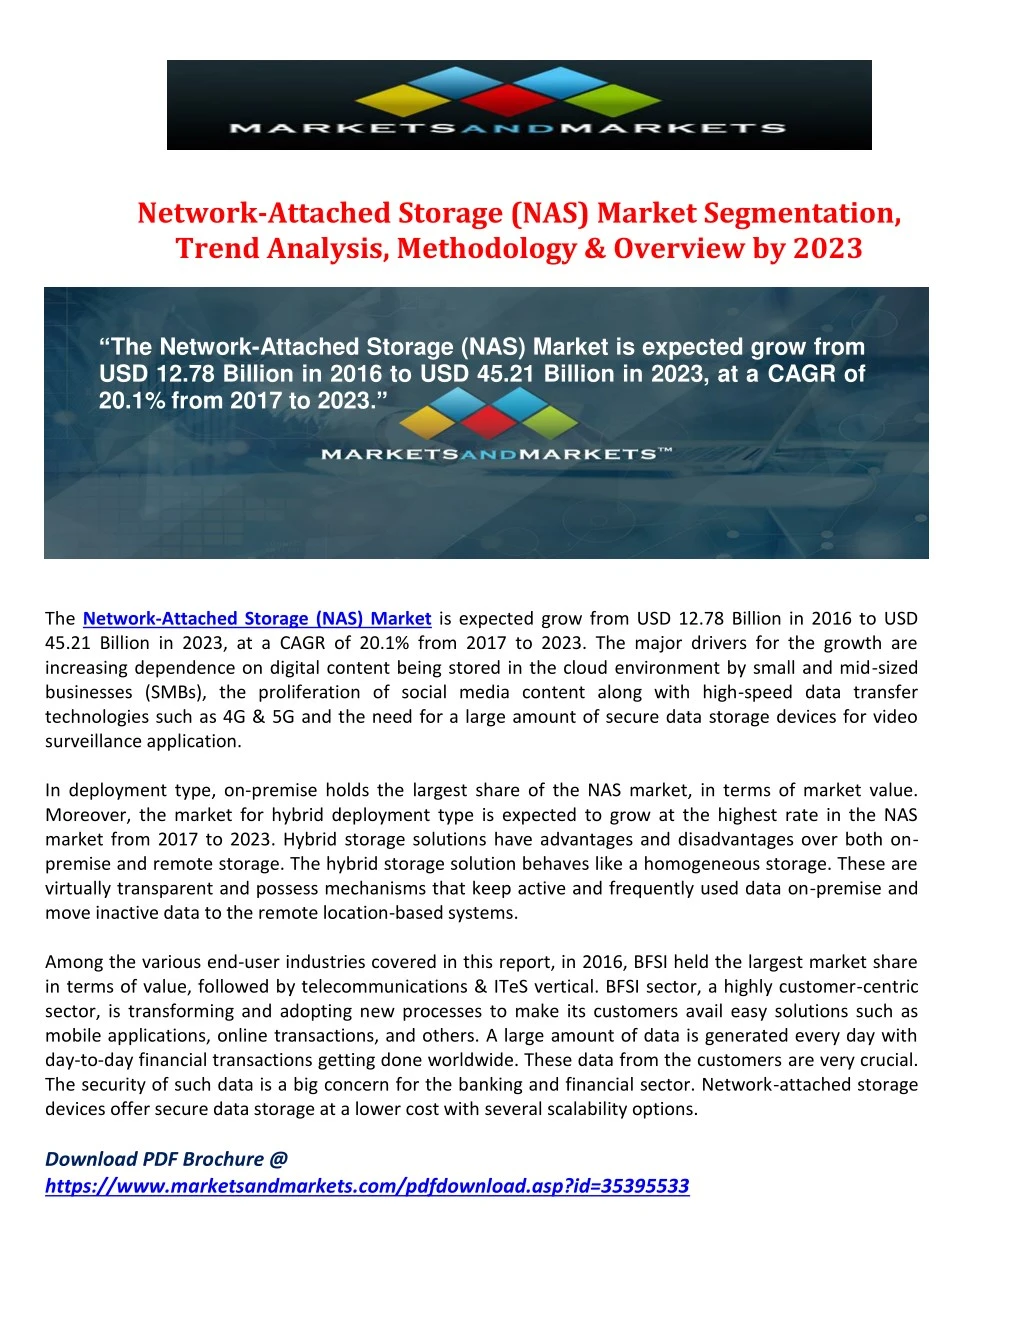 network attached storage nas market segmentation